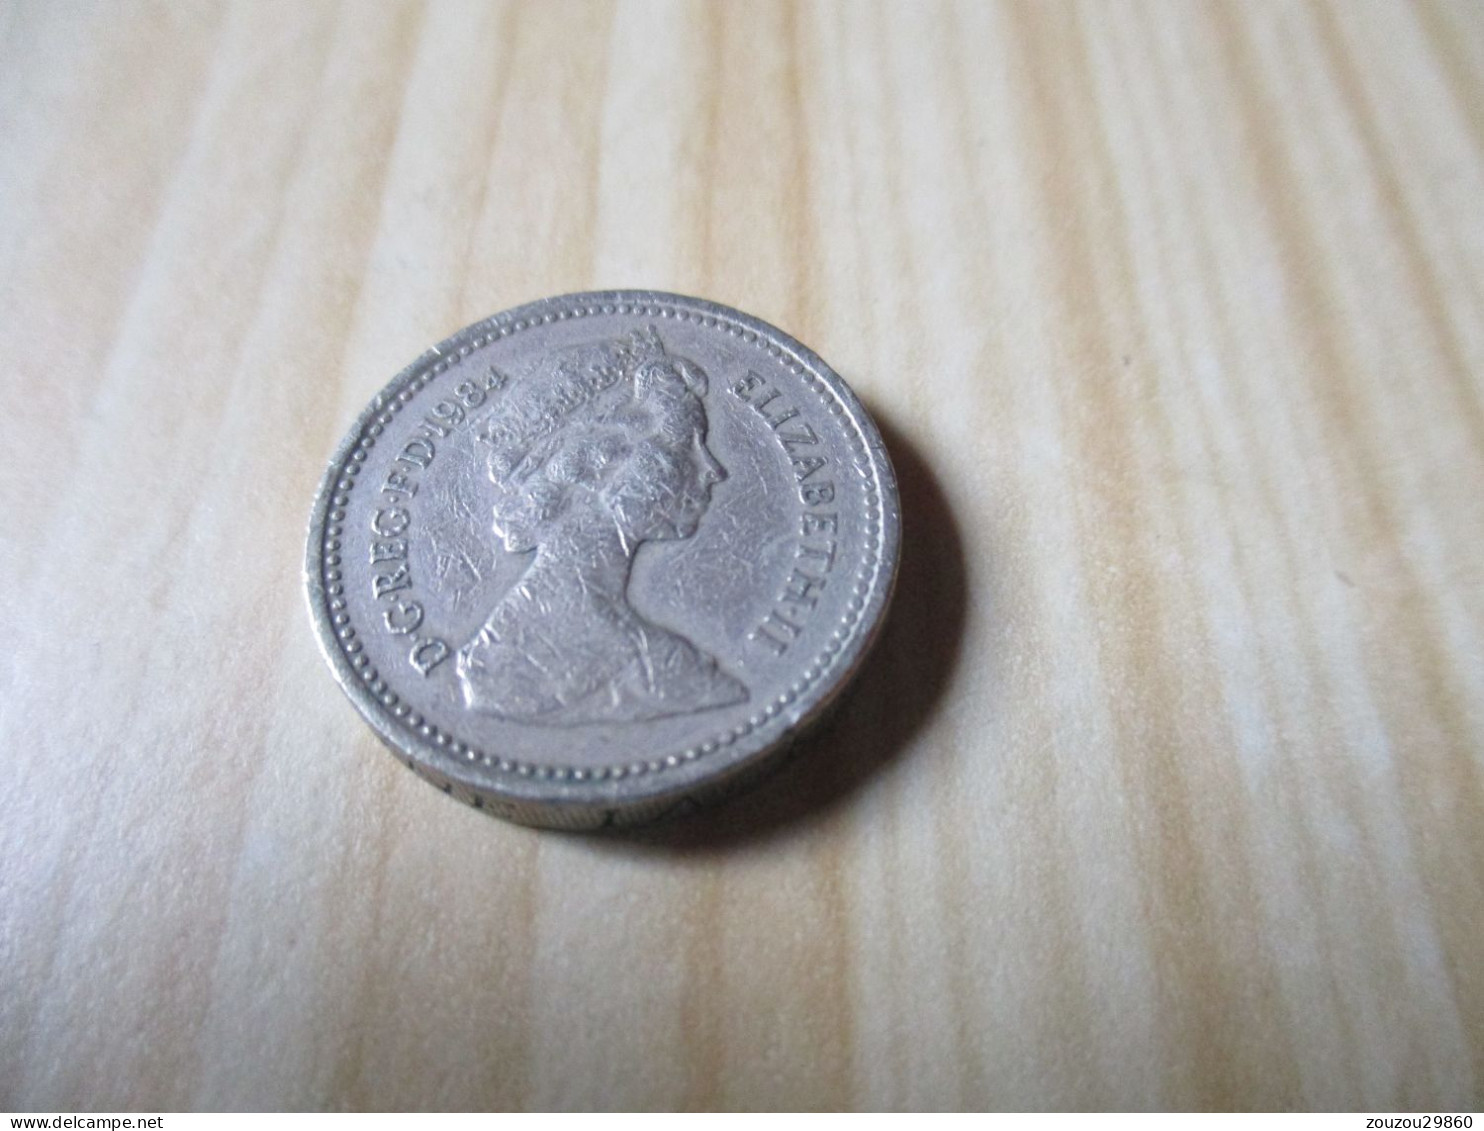 Grande-Bretagne - One Pound Elizabeth II 1984.N°731. - 1 Pound